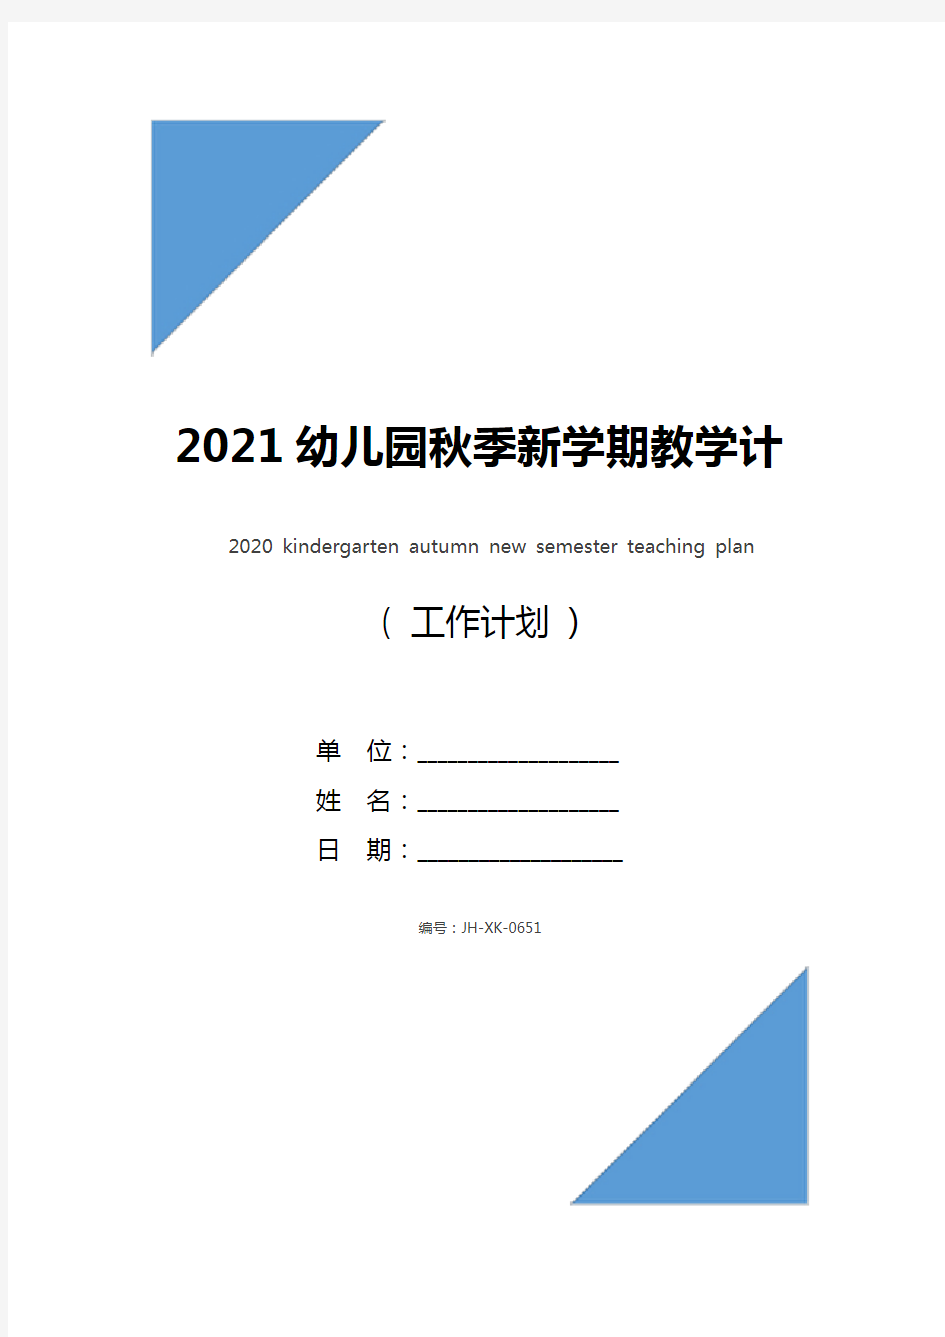 2021幼儿园秋季新学期教学计划(新版)